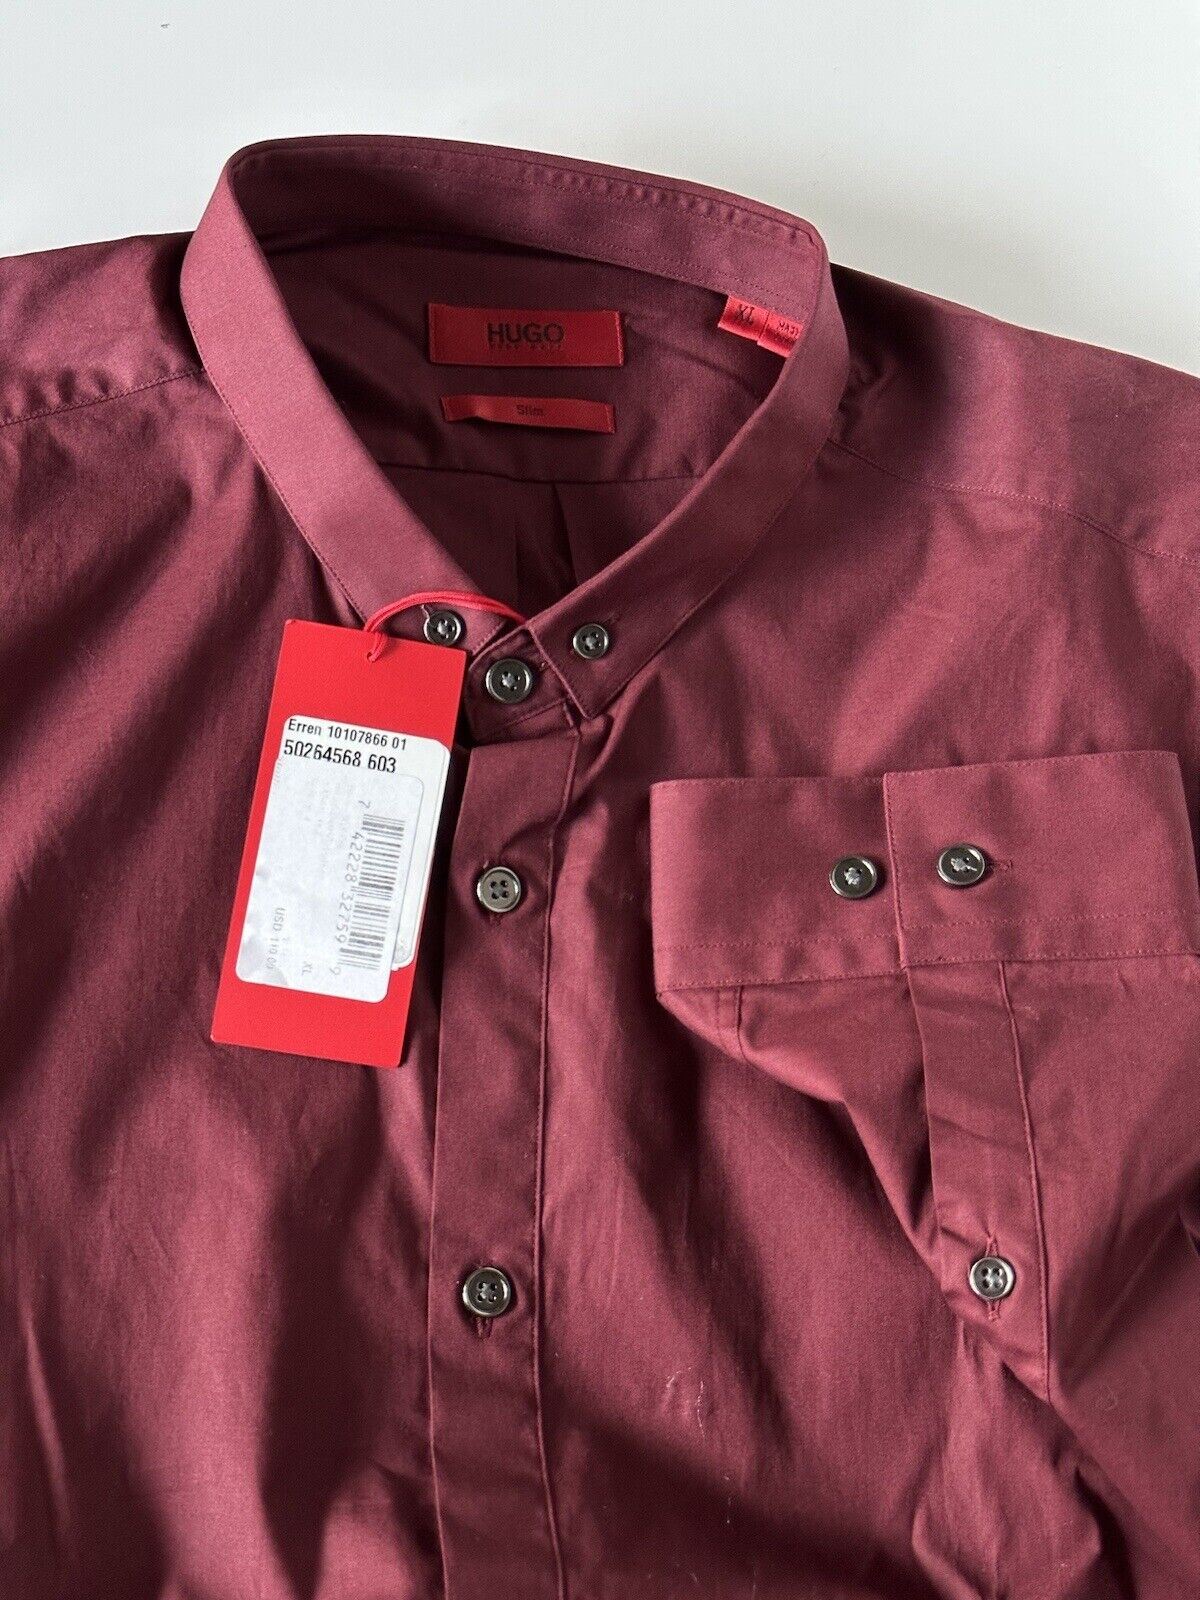 NWT BOSS Hugo Boss Men's Erren Modern Slim Fit Dark Red Dress Shirt XL